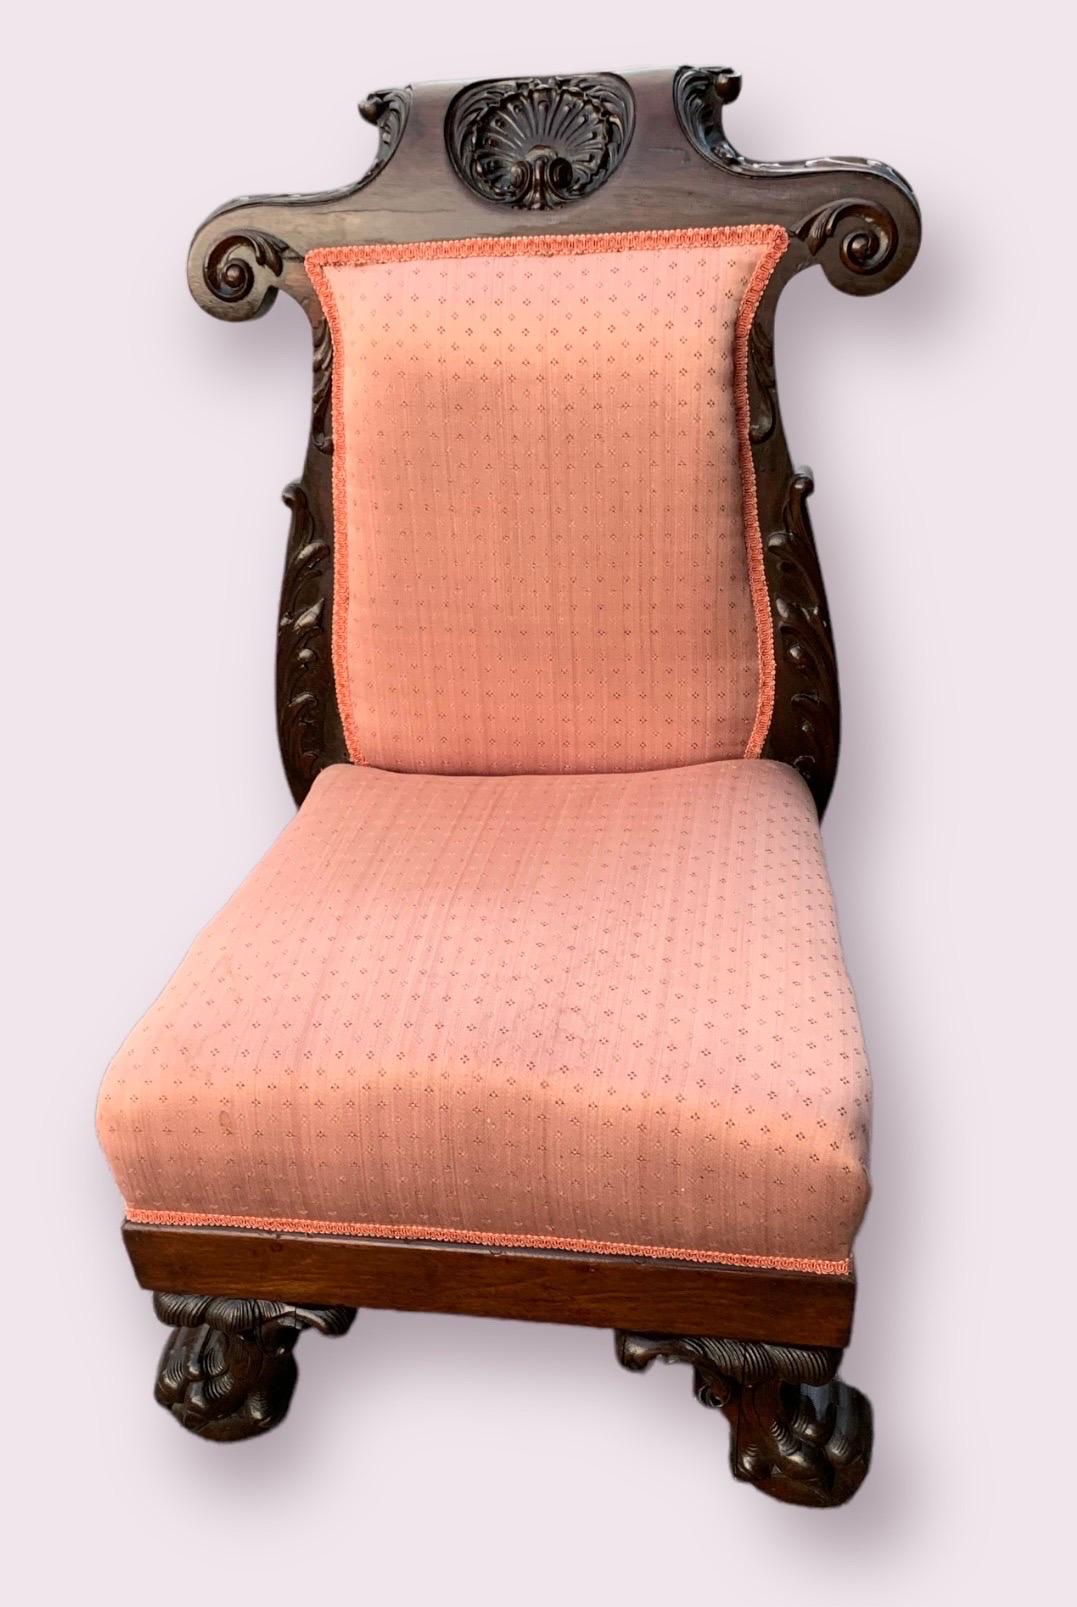 Il s'agit d'une ancienne chaise à pantoufles en forme de prie dieu, datant de la fin du 19e siècle, en noyer sculpté à la main et recouverte d'une tapisserie de couleur corail clair. La coquille sculptée très détaillée sur le cimier constitue une